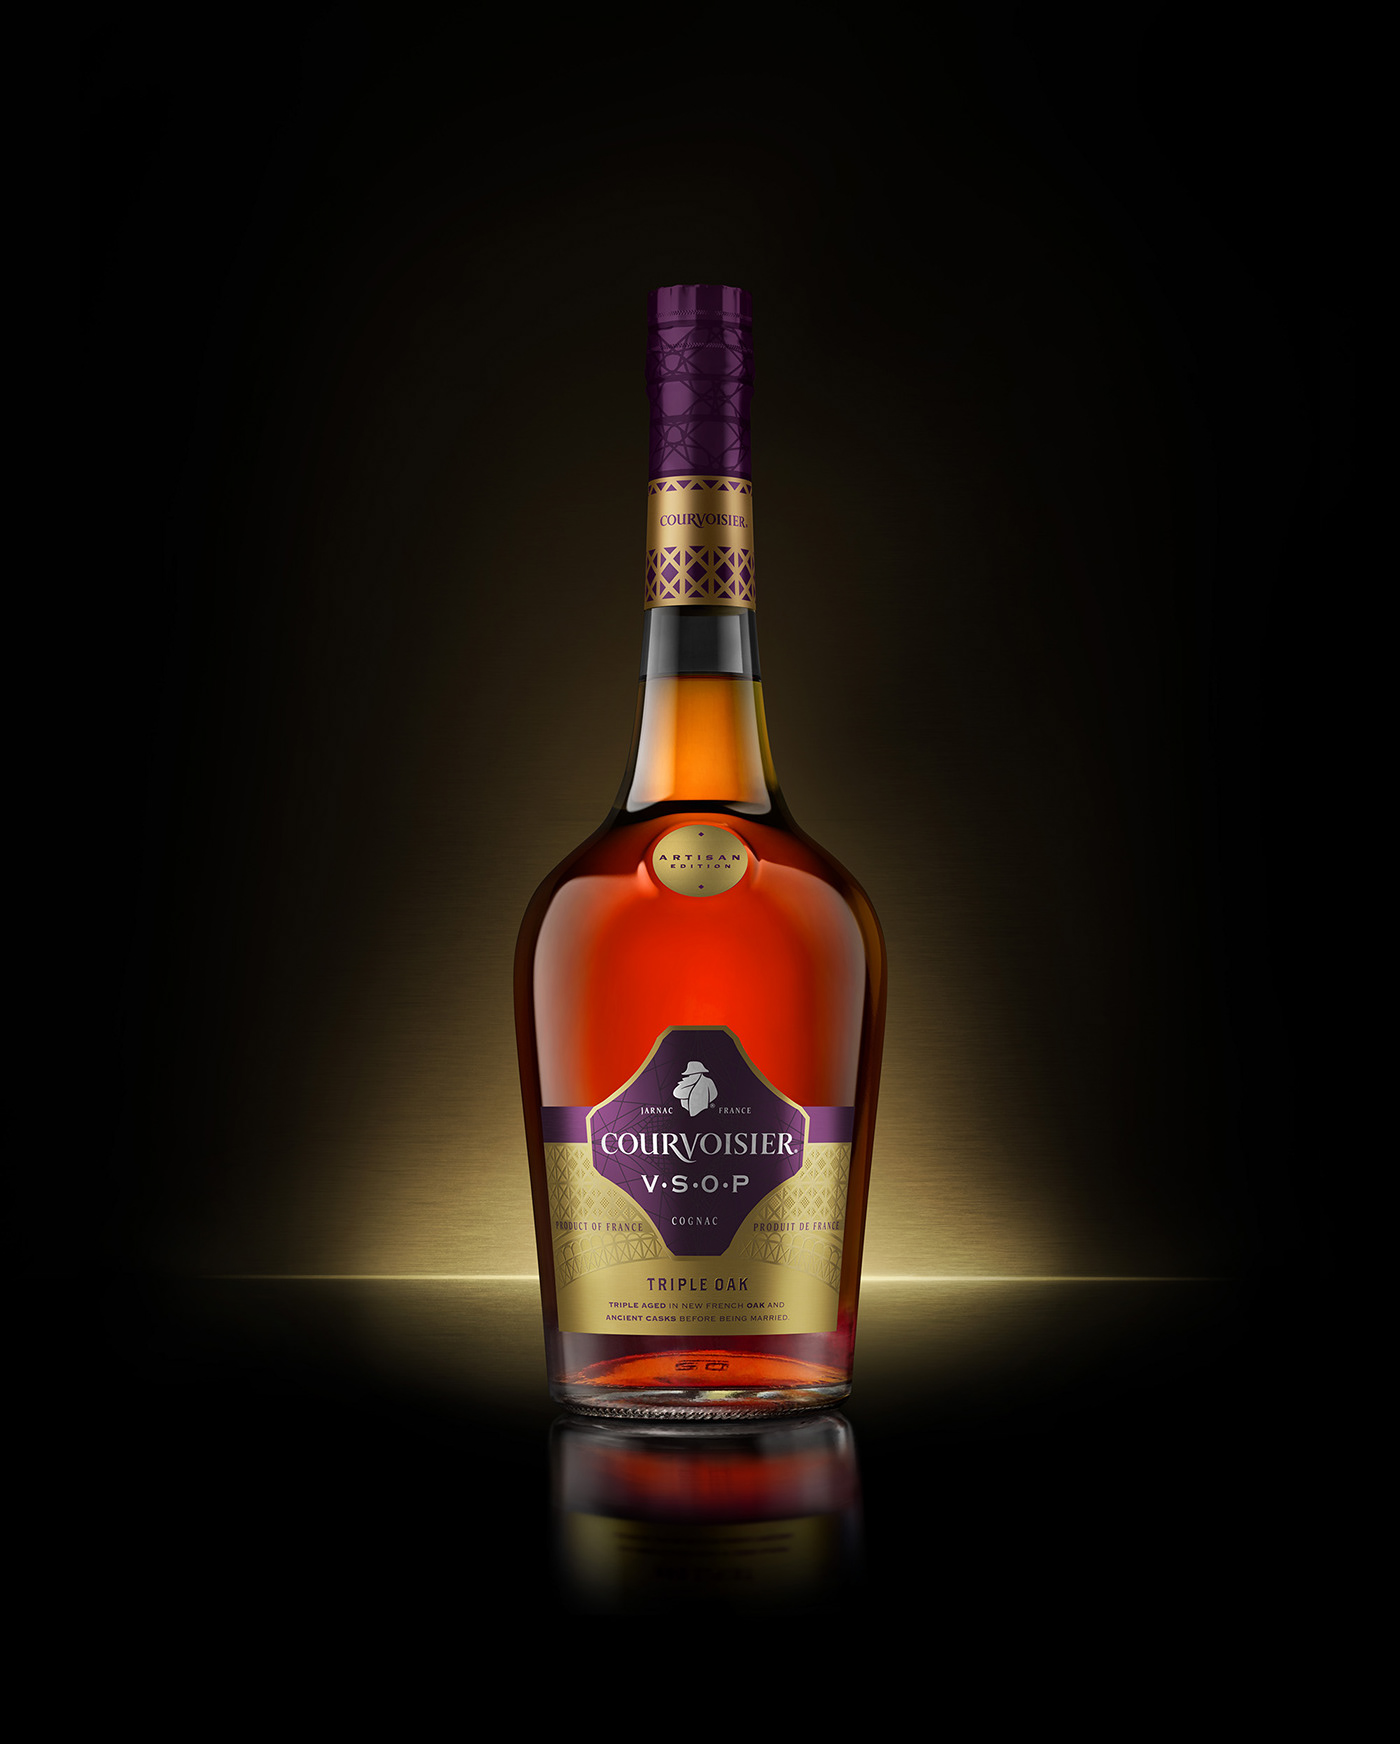 Courvoisier alcohol Packaging 3D Cognac bottle carton retouching  Packshot detail